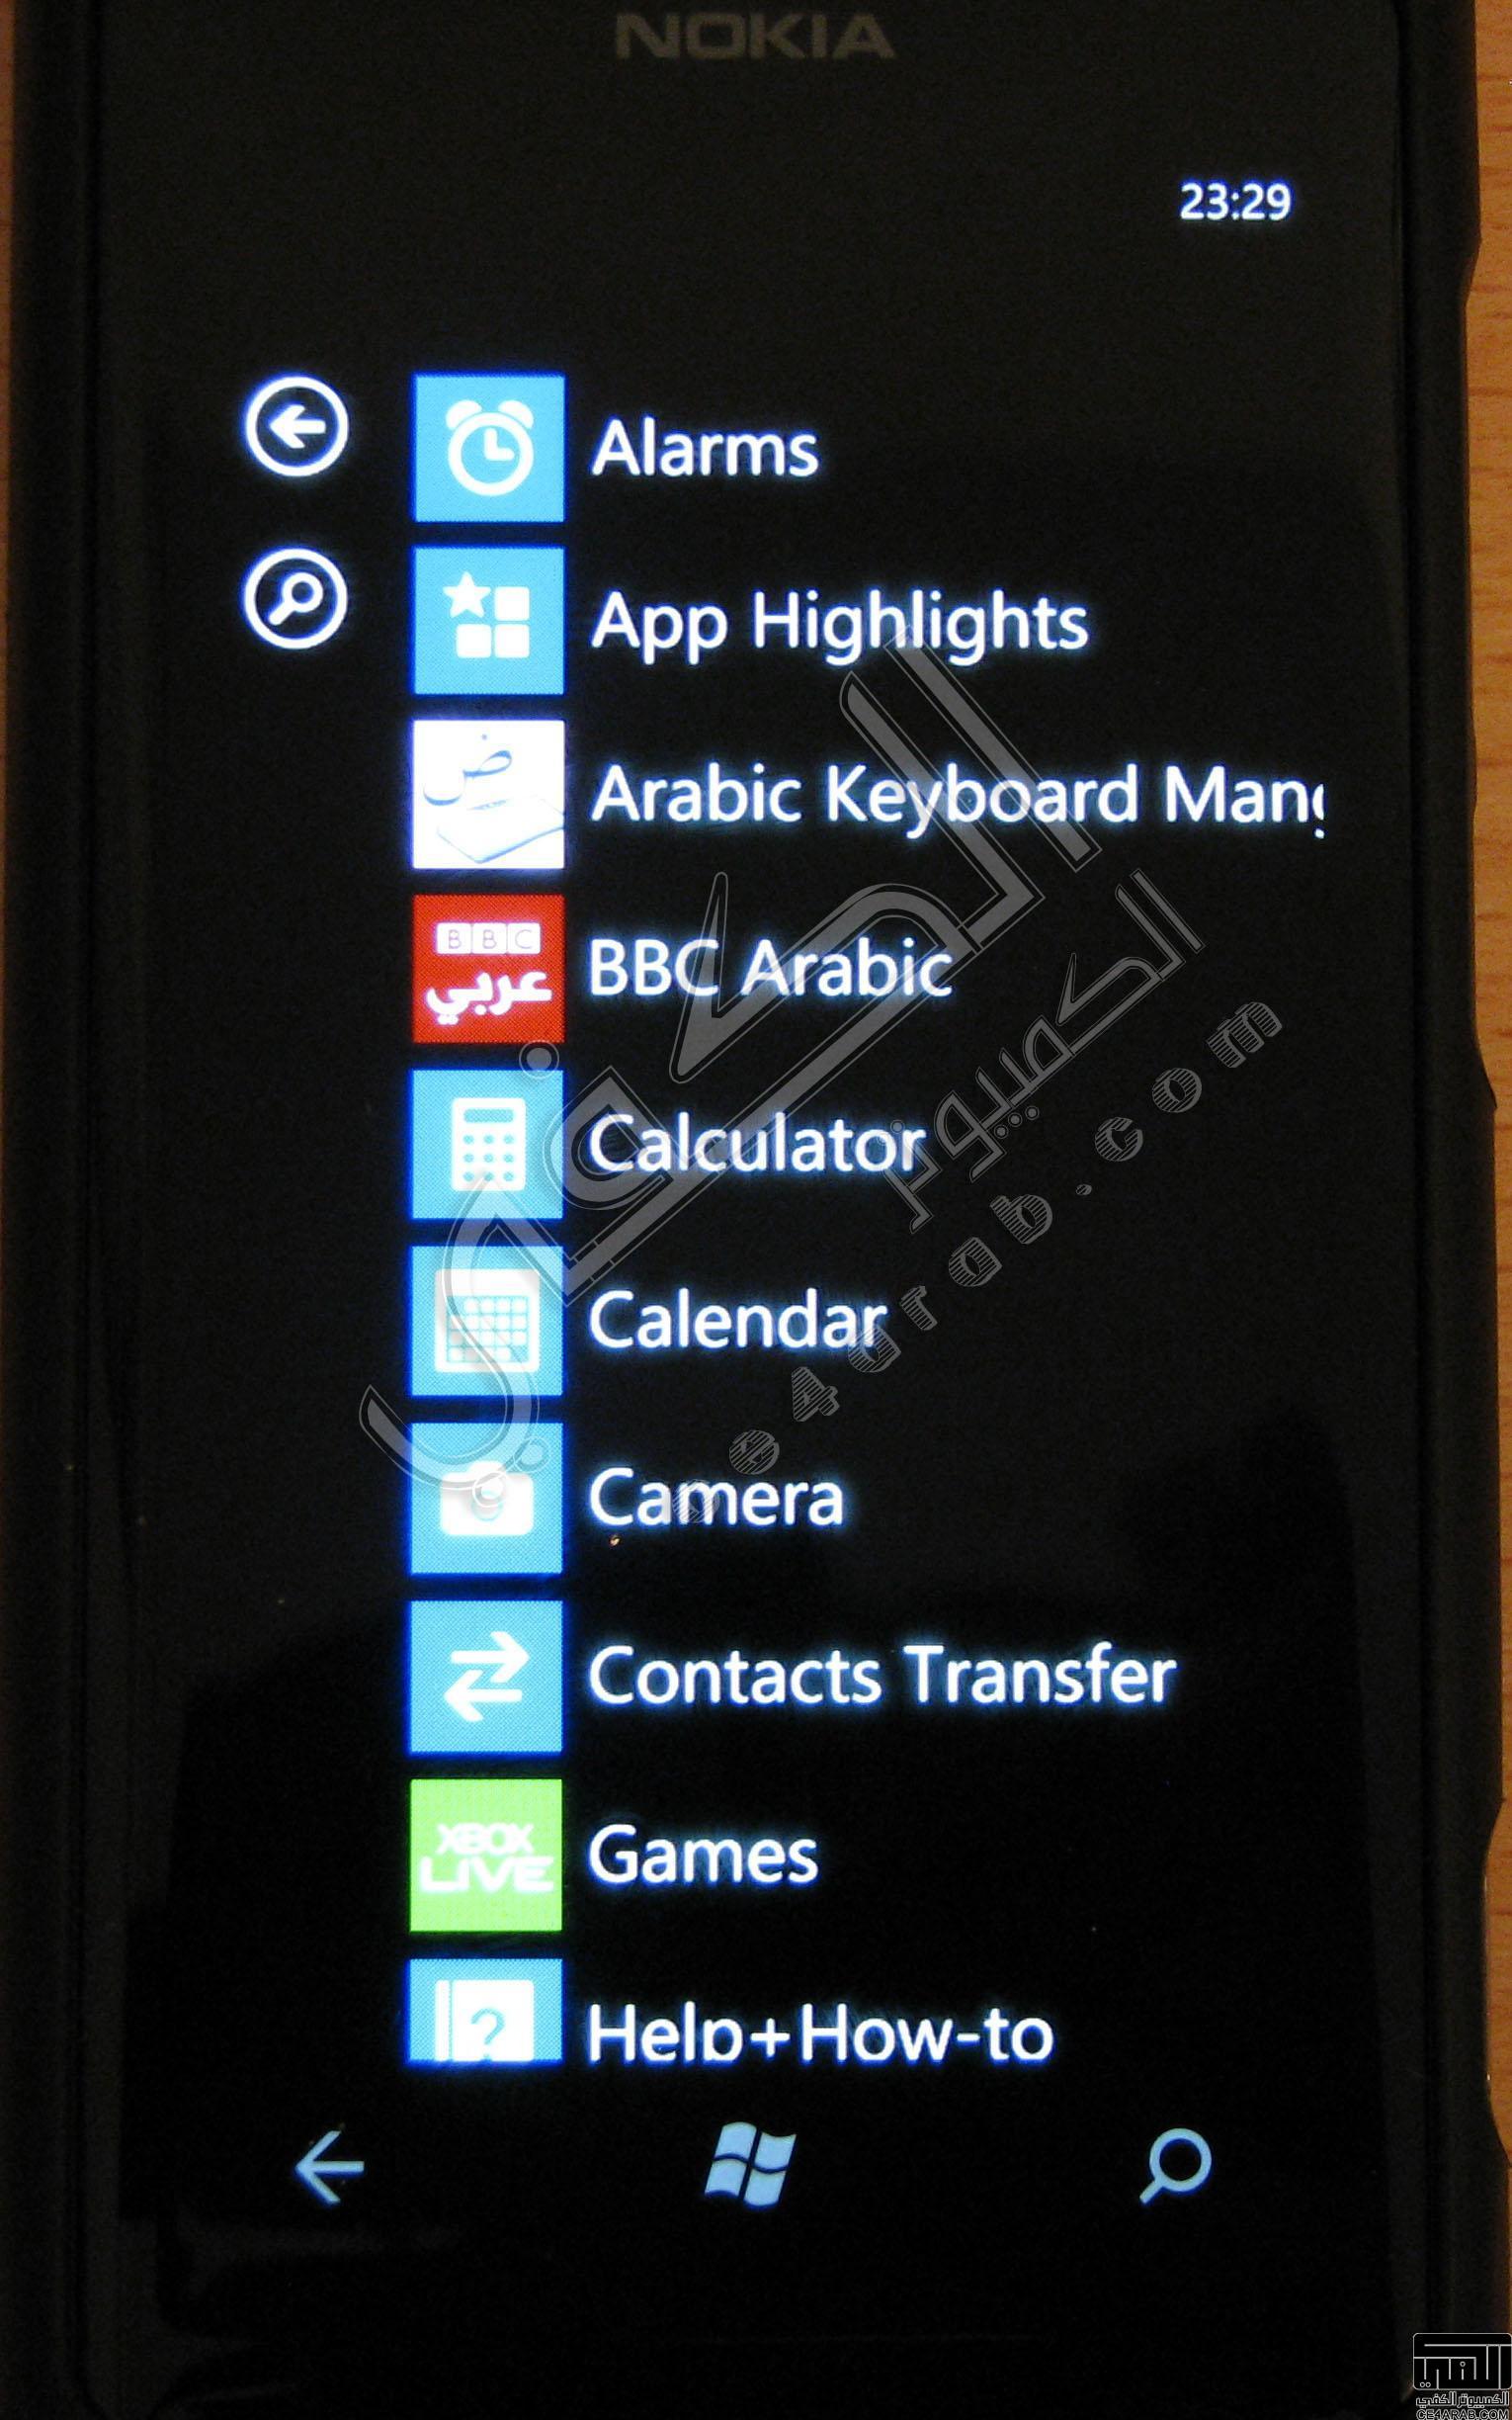 تجربتي الشخصية مع هاتف Nokia Lumia 800 الجزء الثاني